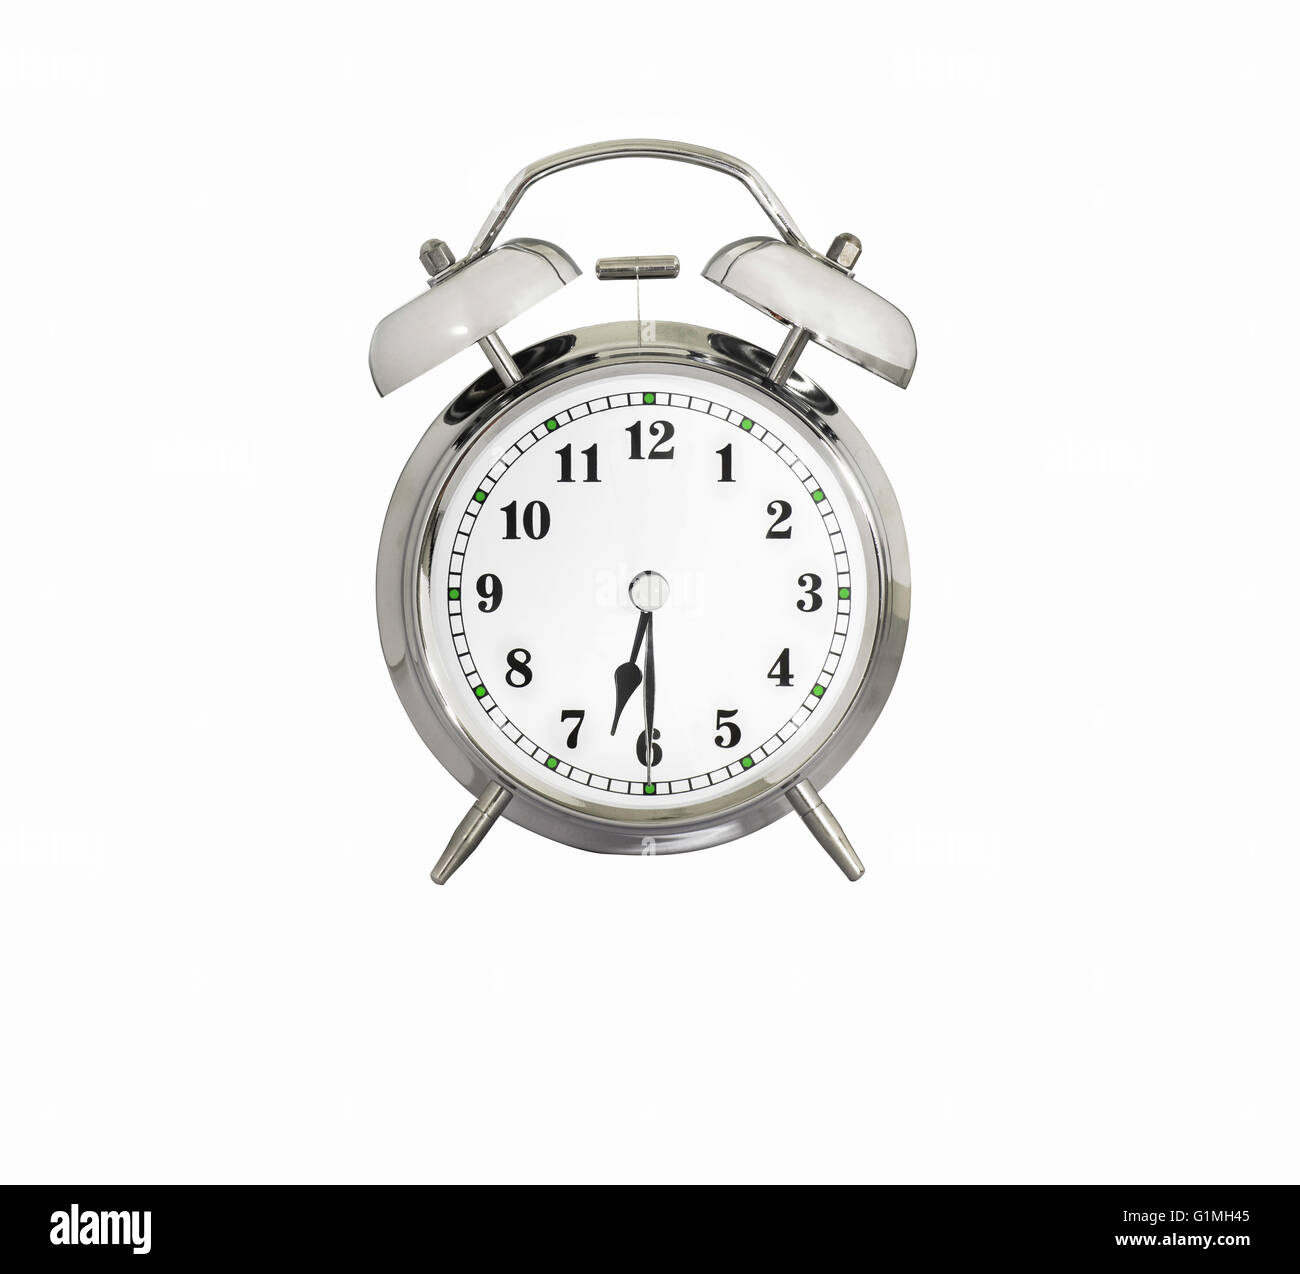 Alarm clock time 6 30 immagini e fotografie stock ad alta risoluzione -  Alamy